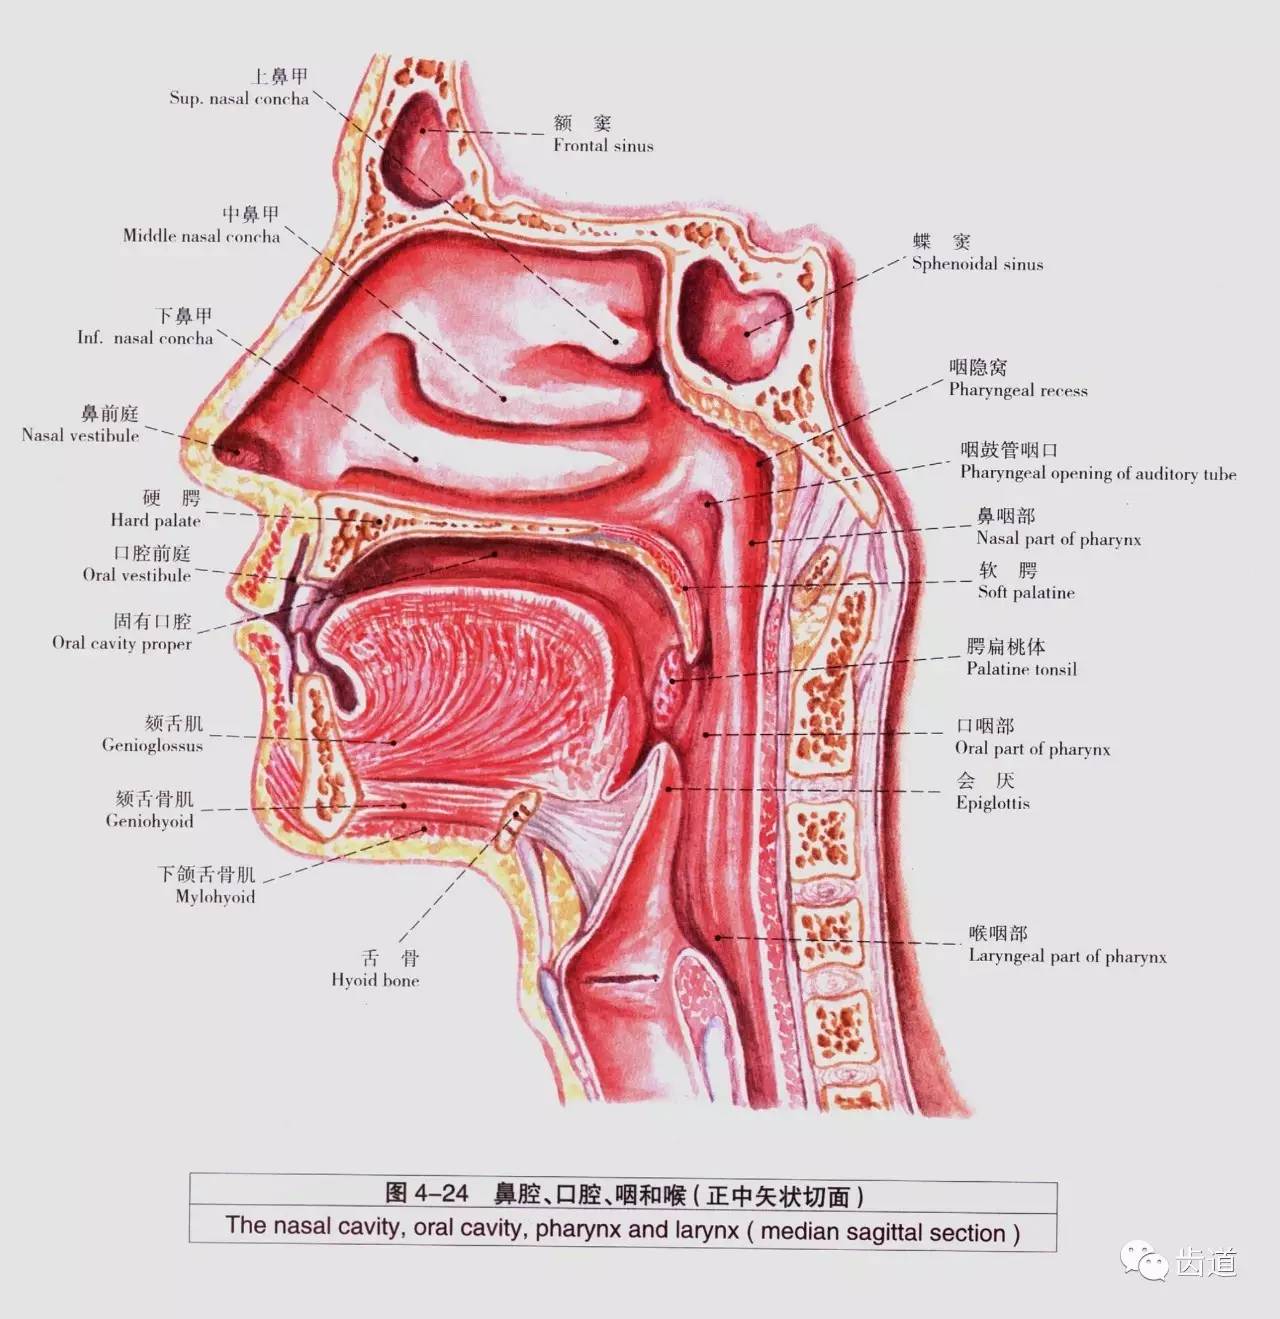 来源:《口腔颌面颈部局部解剖学》黄春梅女士 18225033872(也是微信号